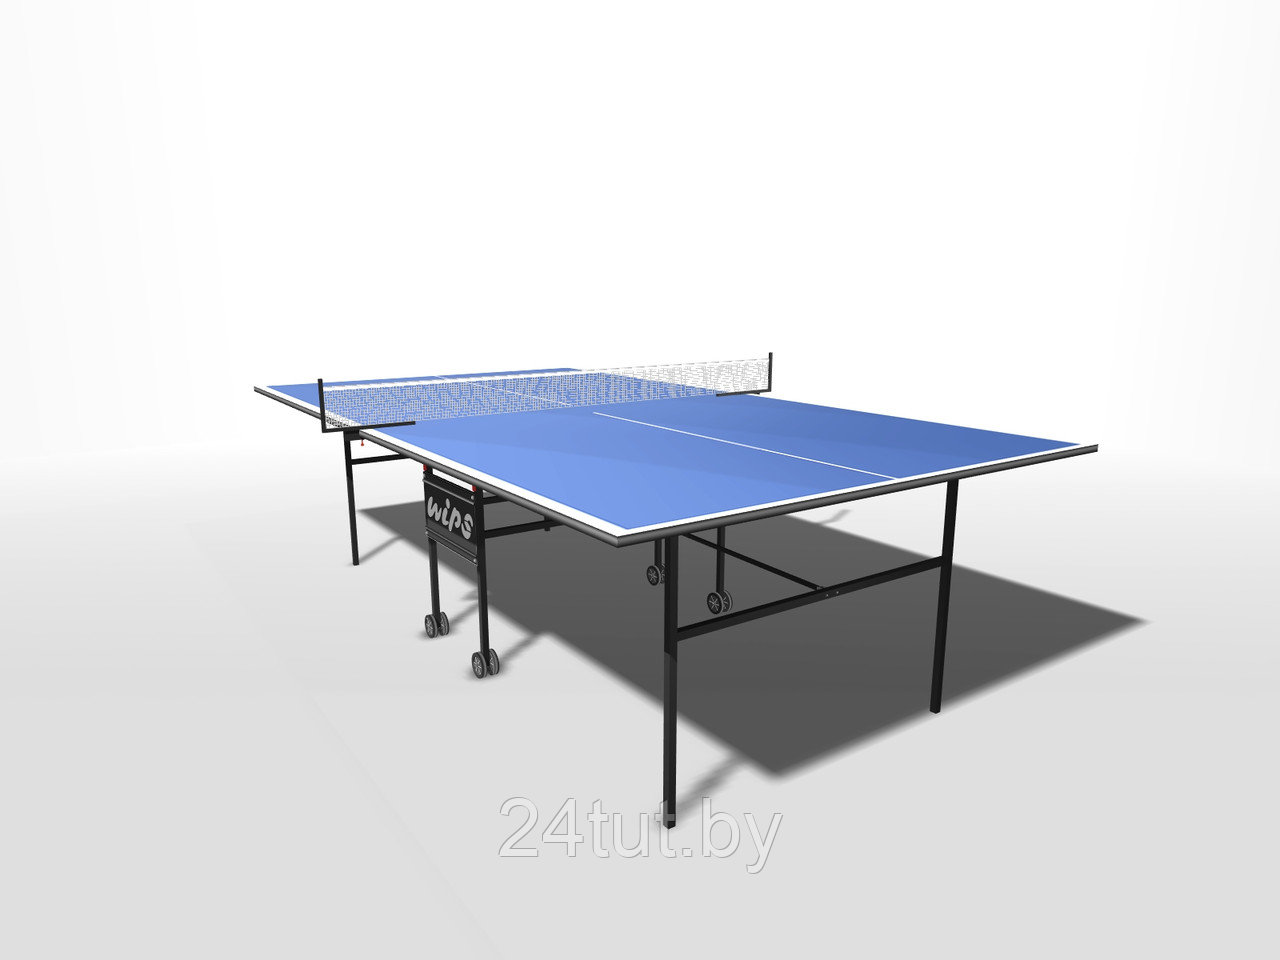 Теннисные столы Wips Стол теннисный, складной на роликах WIPS Roller 61020